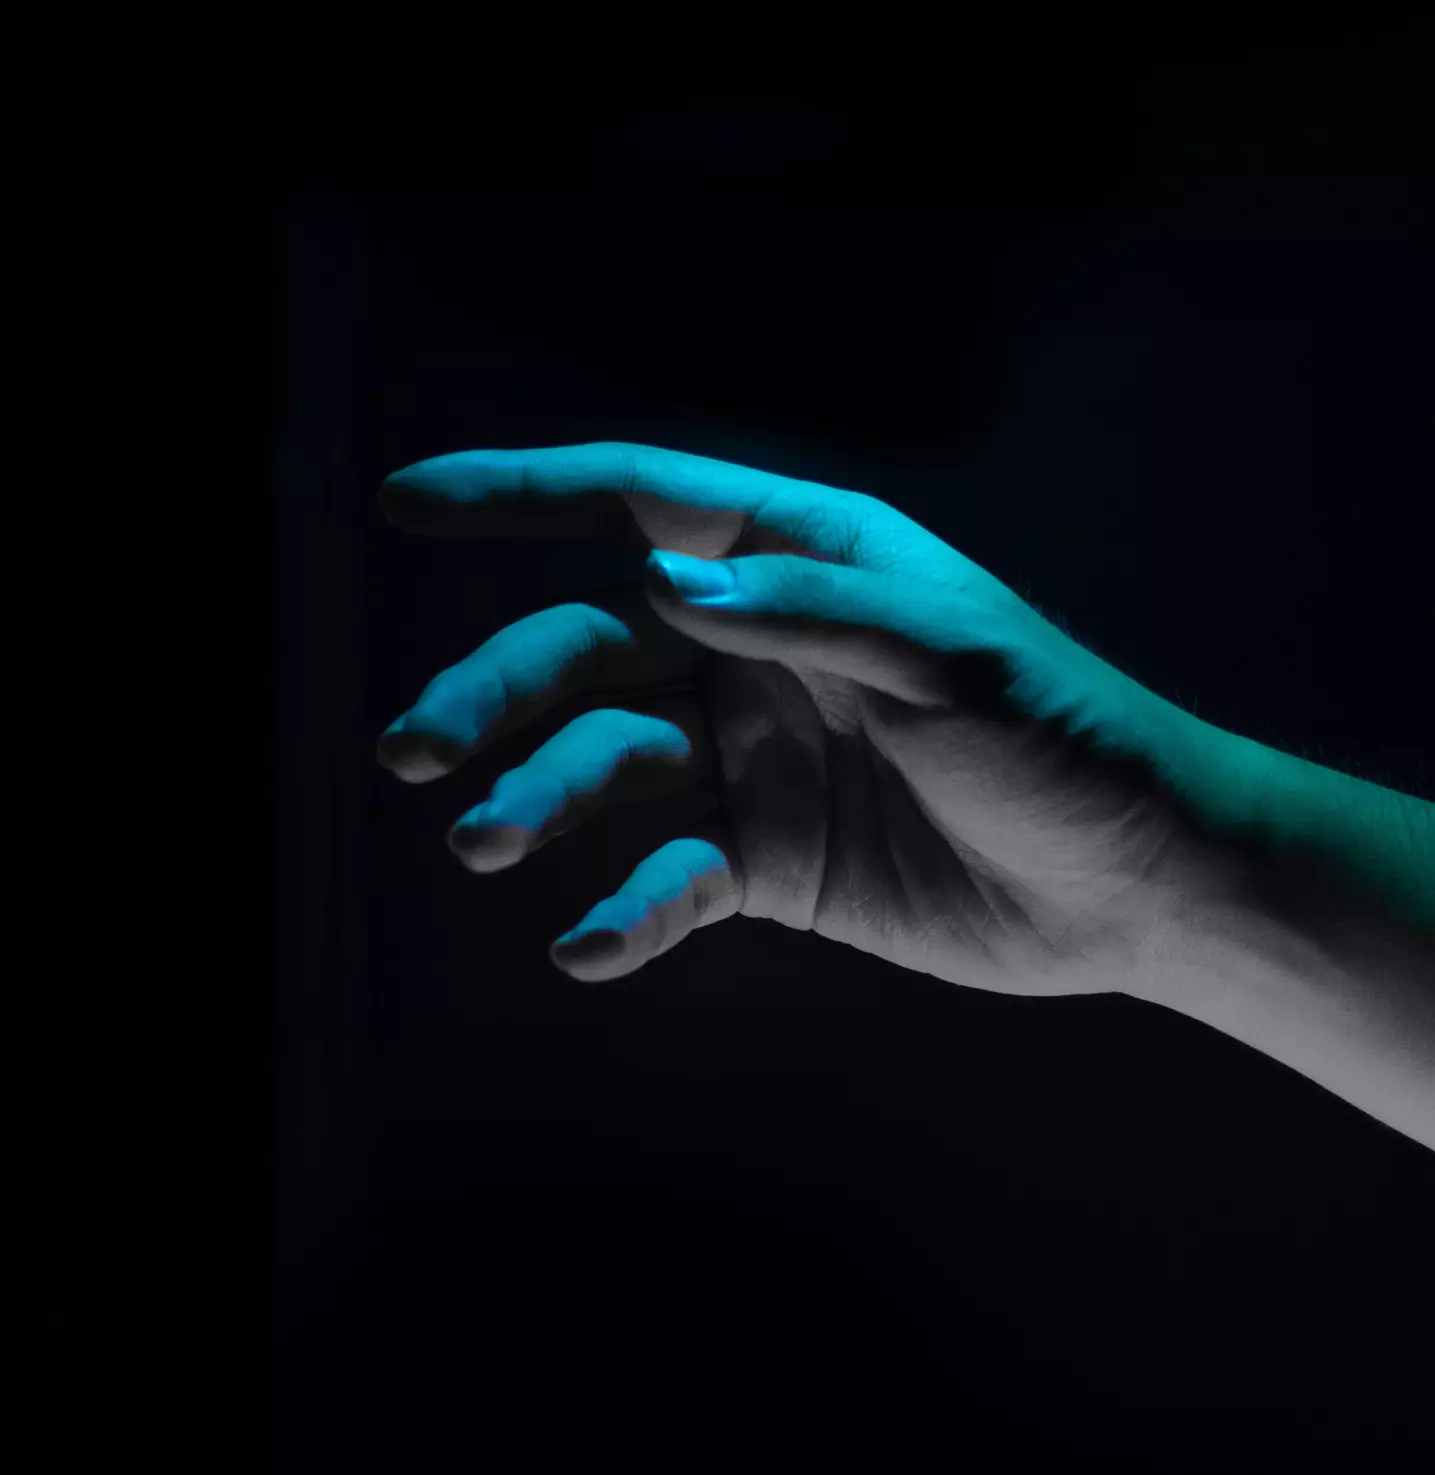 Hand under neon light